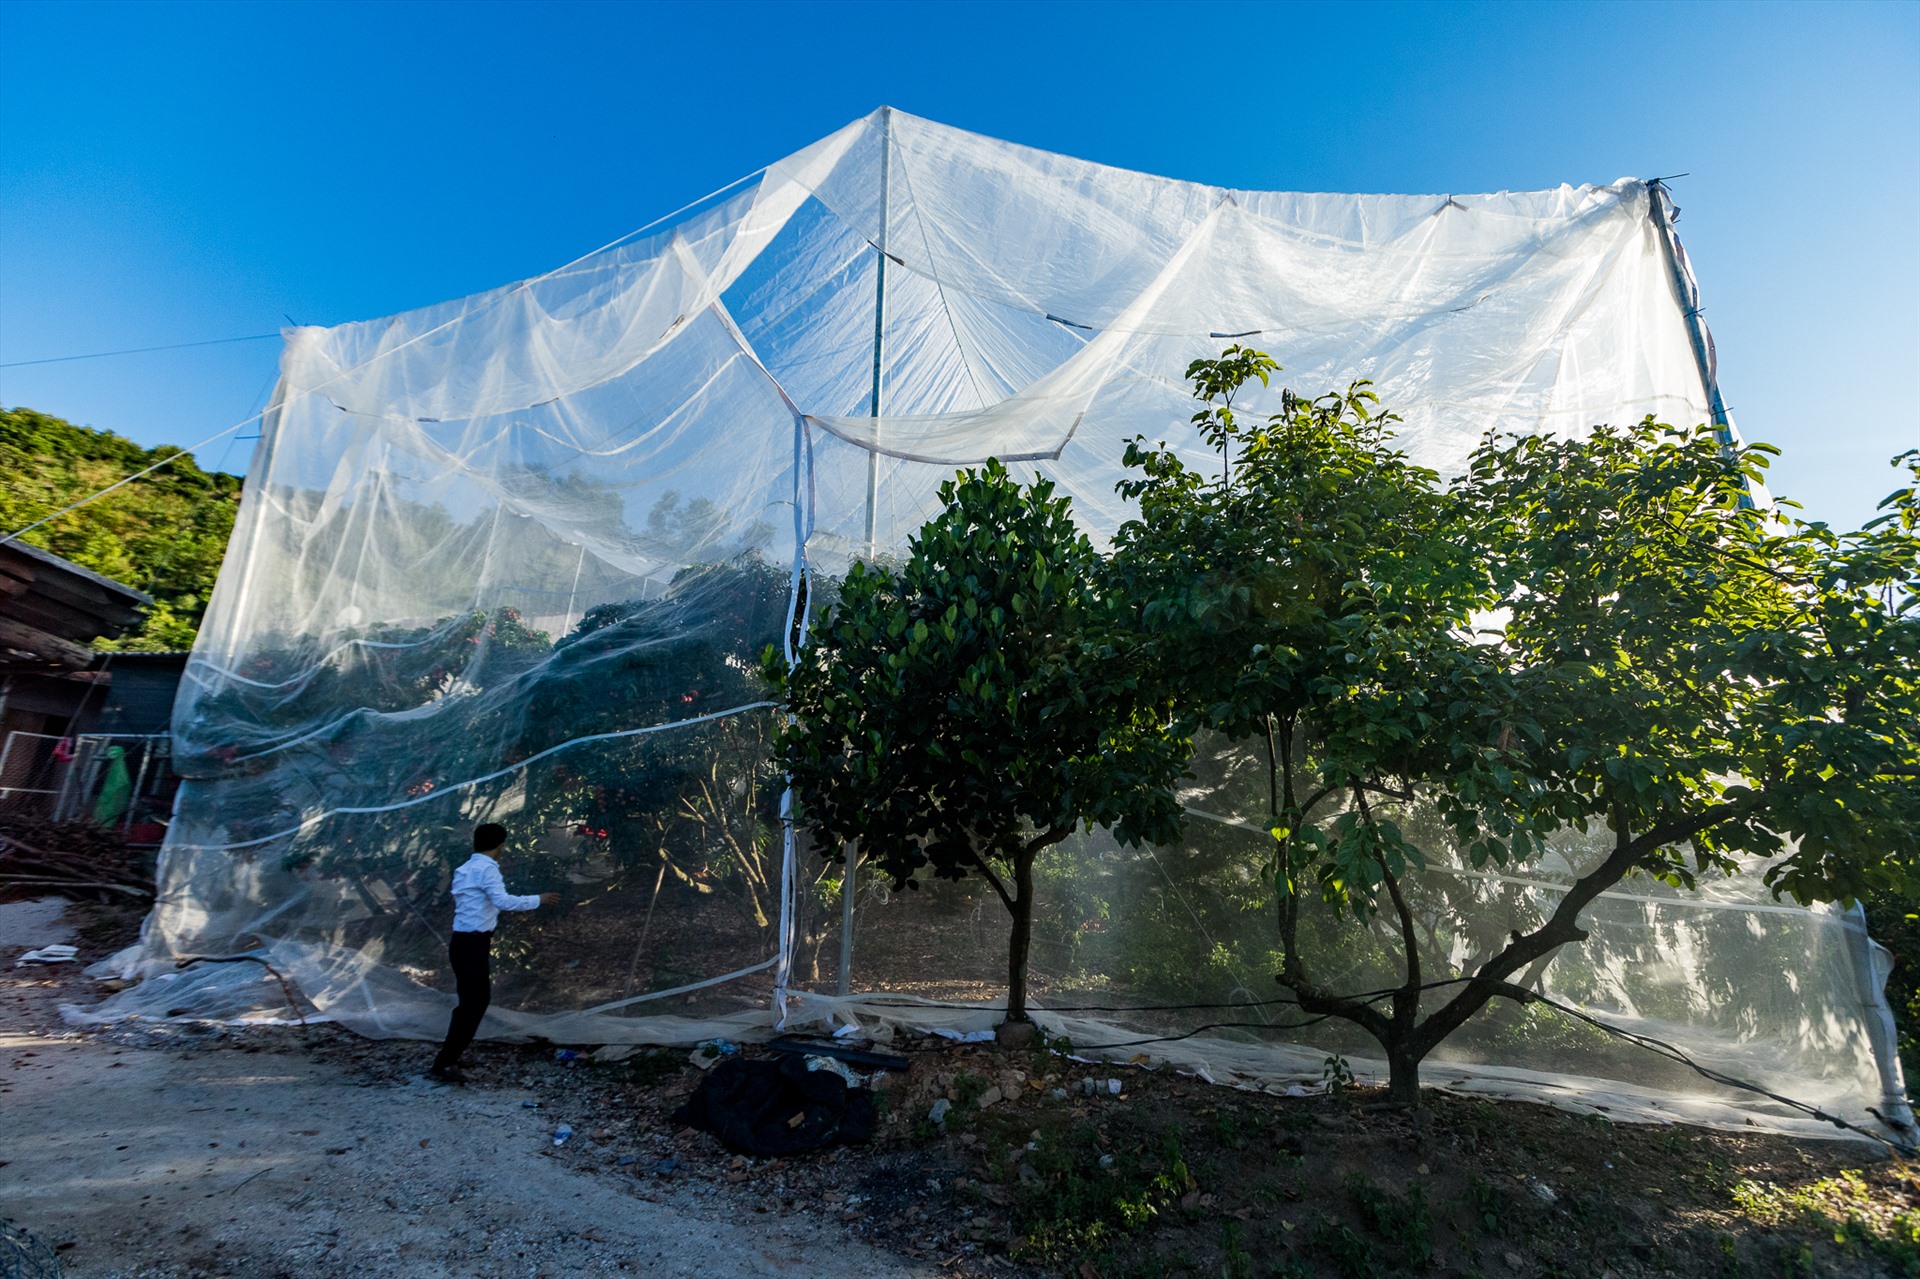 Một mô hình nhà màn để tránh sâu bệnh cho vải đang được thí điểm tại thôn Nam Dương, Lục Ngạn, Bắc Giang. Nếu thành công, mô hình sẽ triển khai trên diện rộng. Phương pháp này sẽ giúp giảm việc sử dụng thuốc trừ sâu.